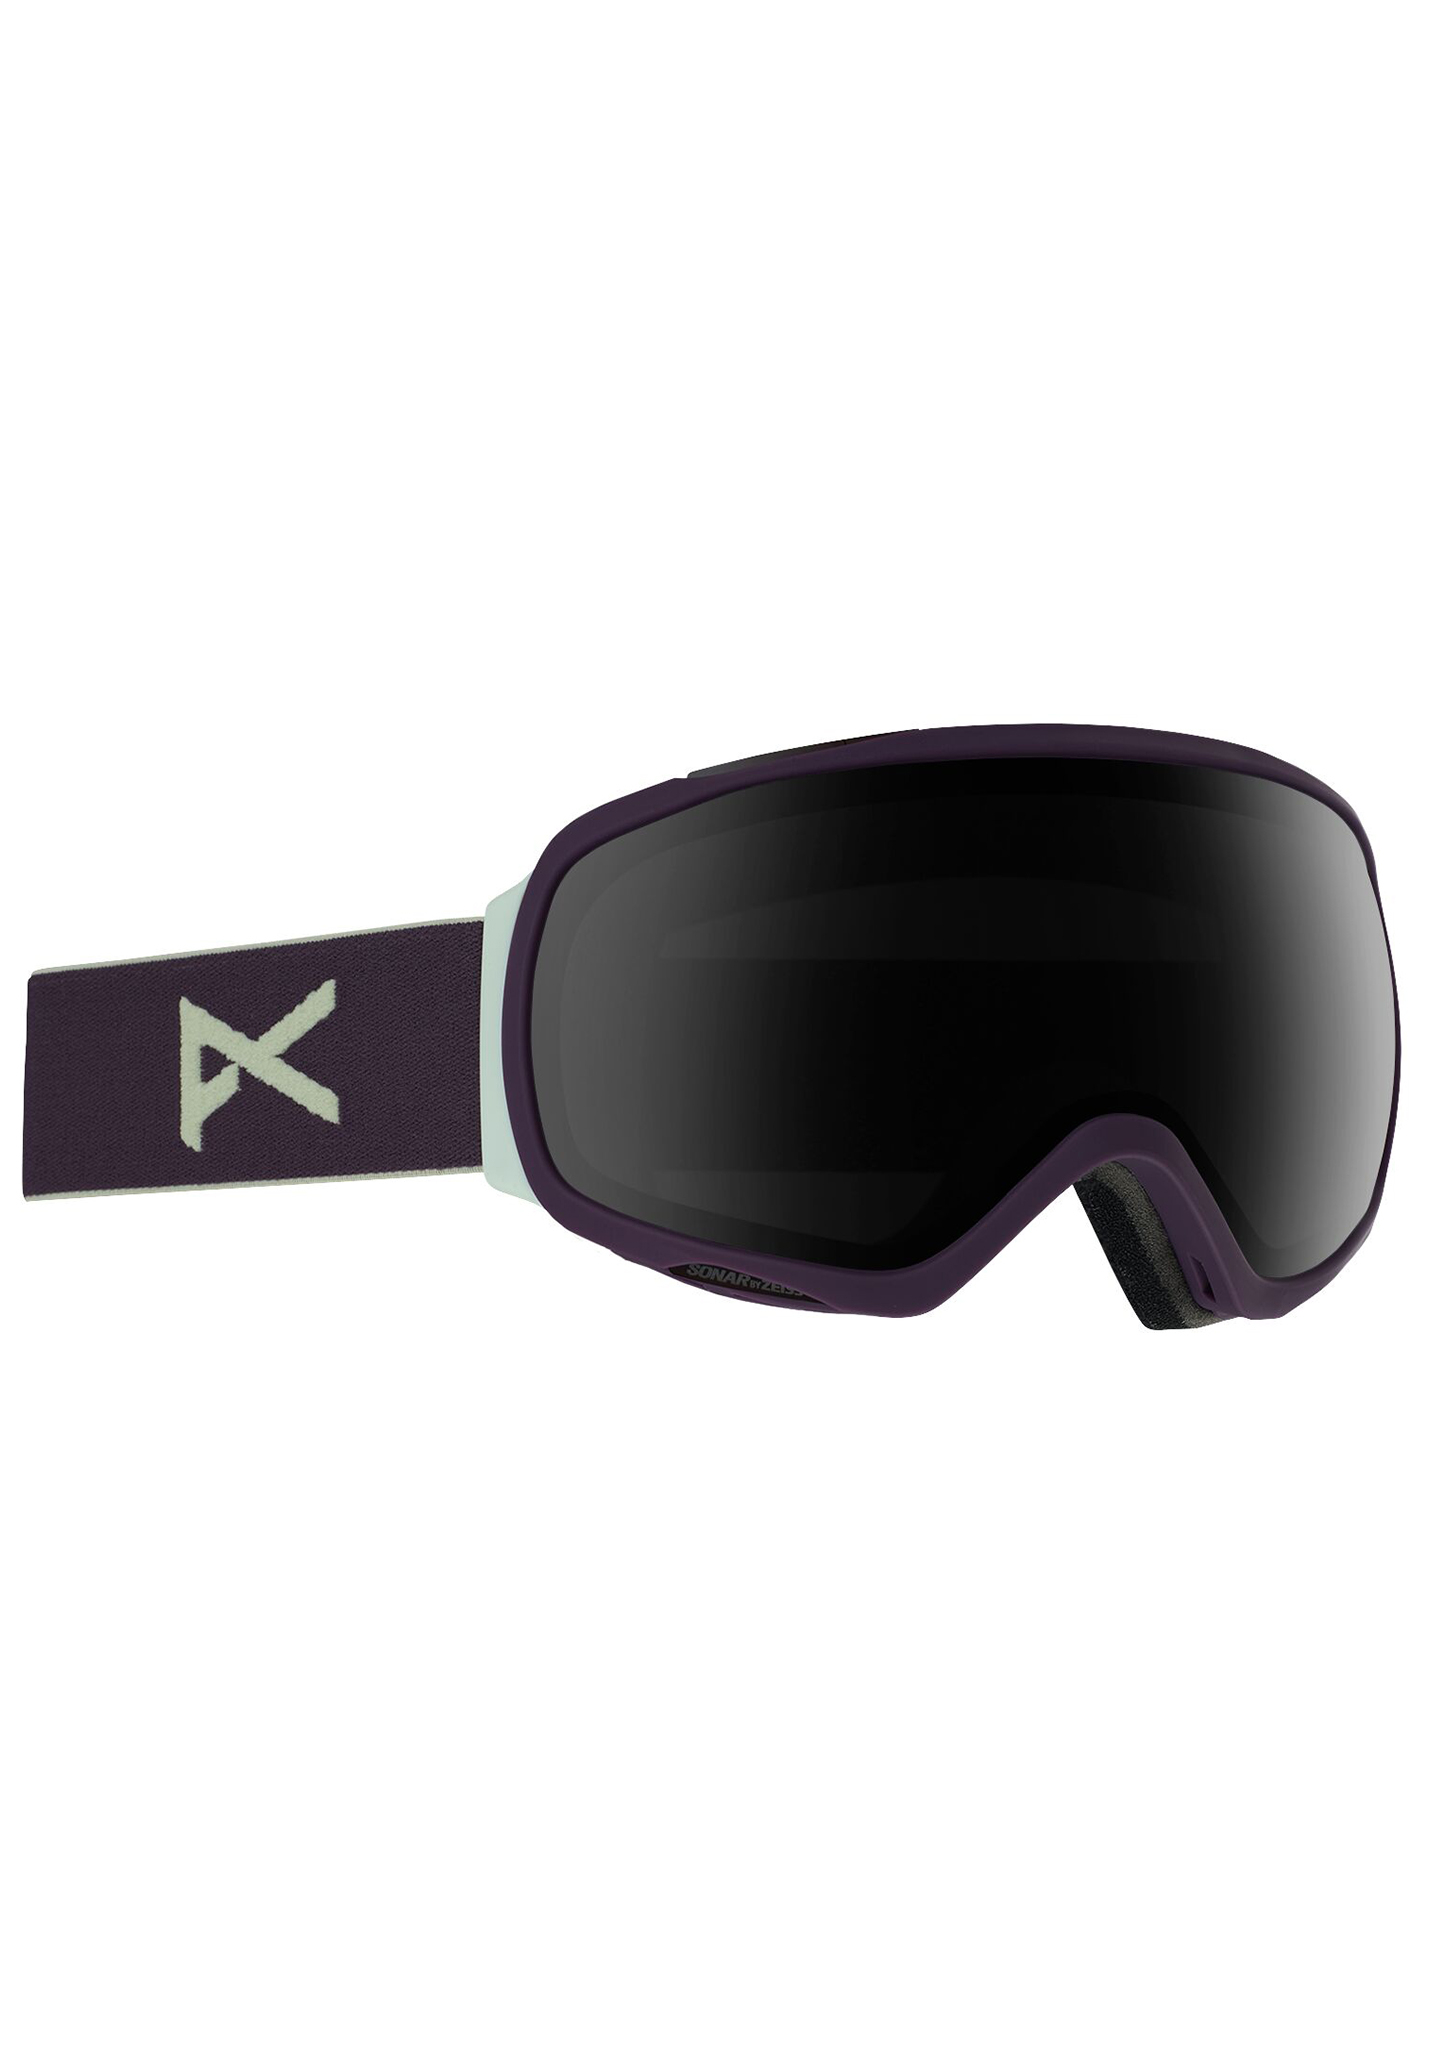 Anon Tempest Snowboardbrillen violett/sonarer rauch One Size